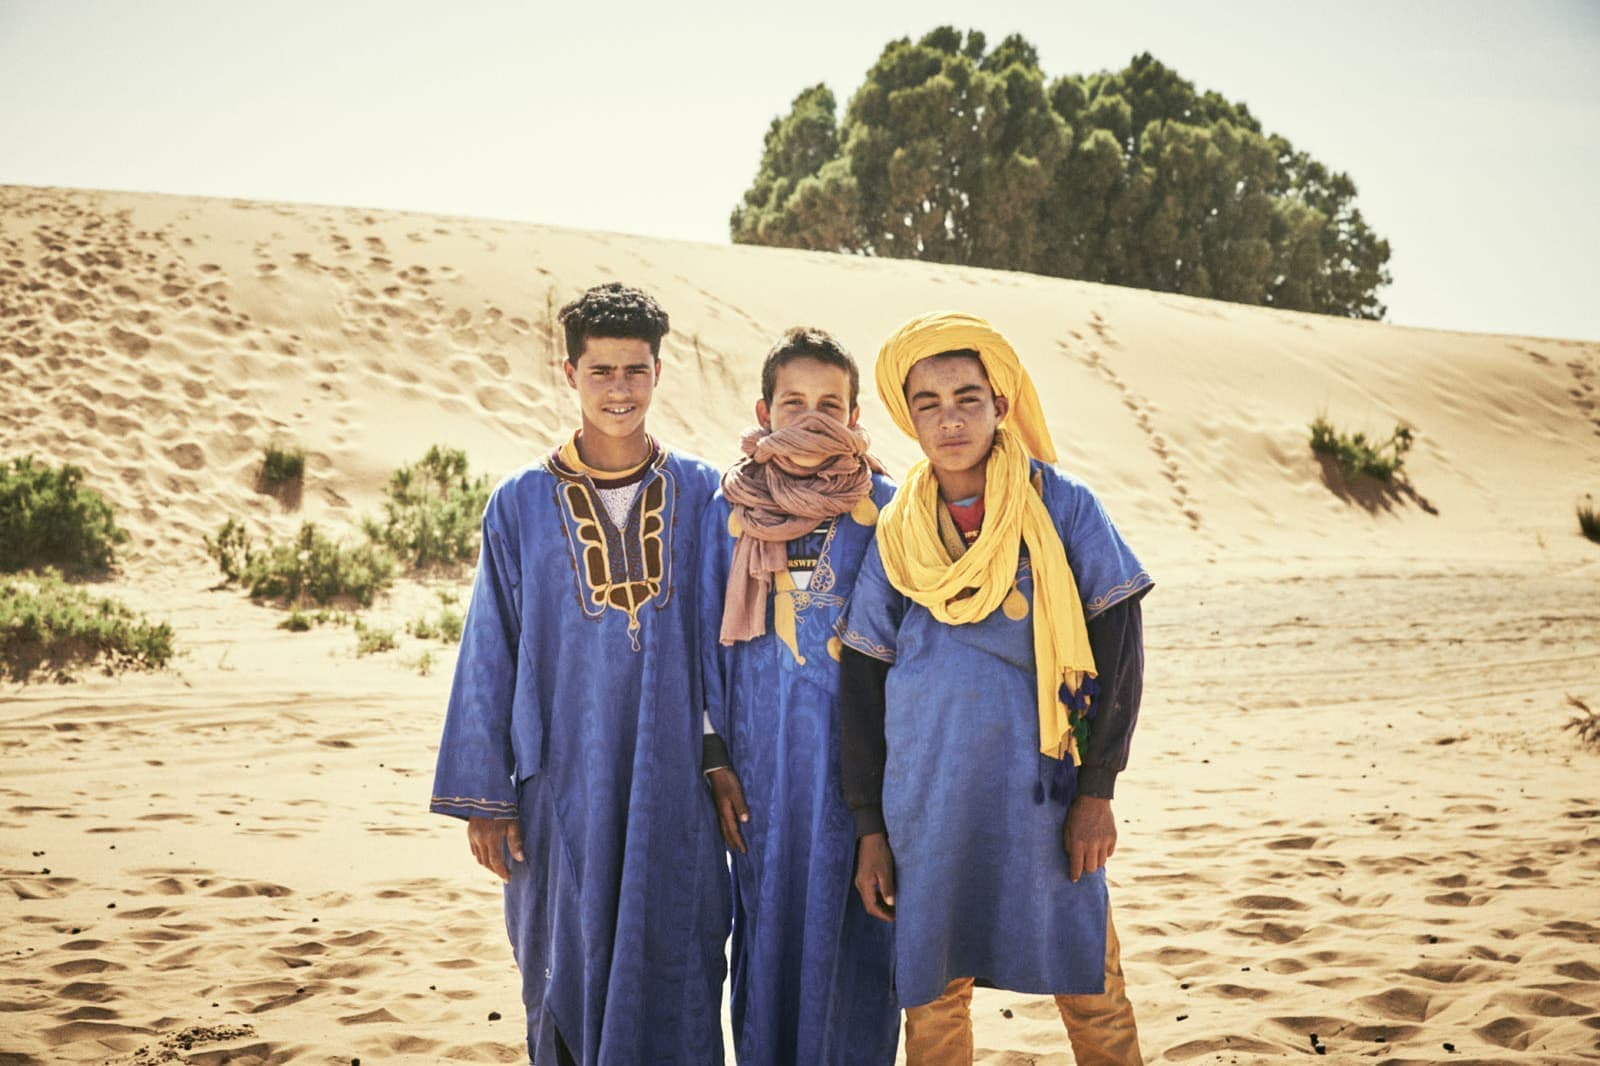 モロッコの旅写真_サハラ沙漠の少年01